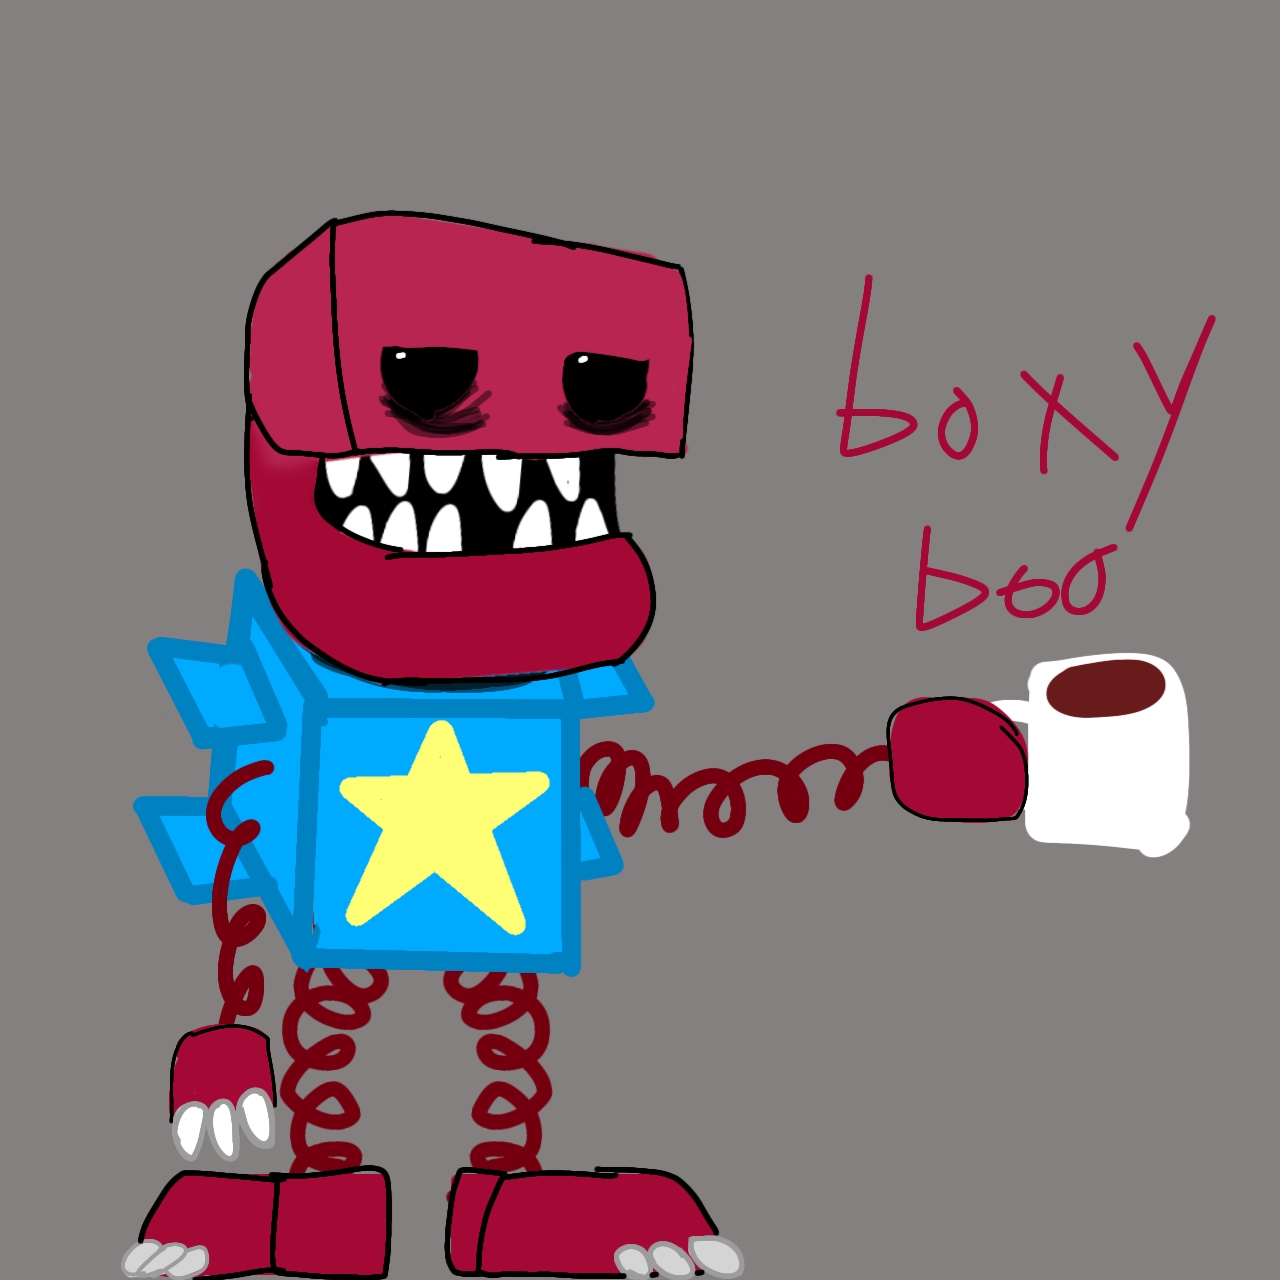 Boxy Boo fanart